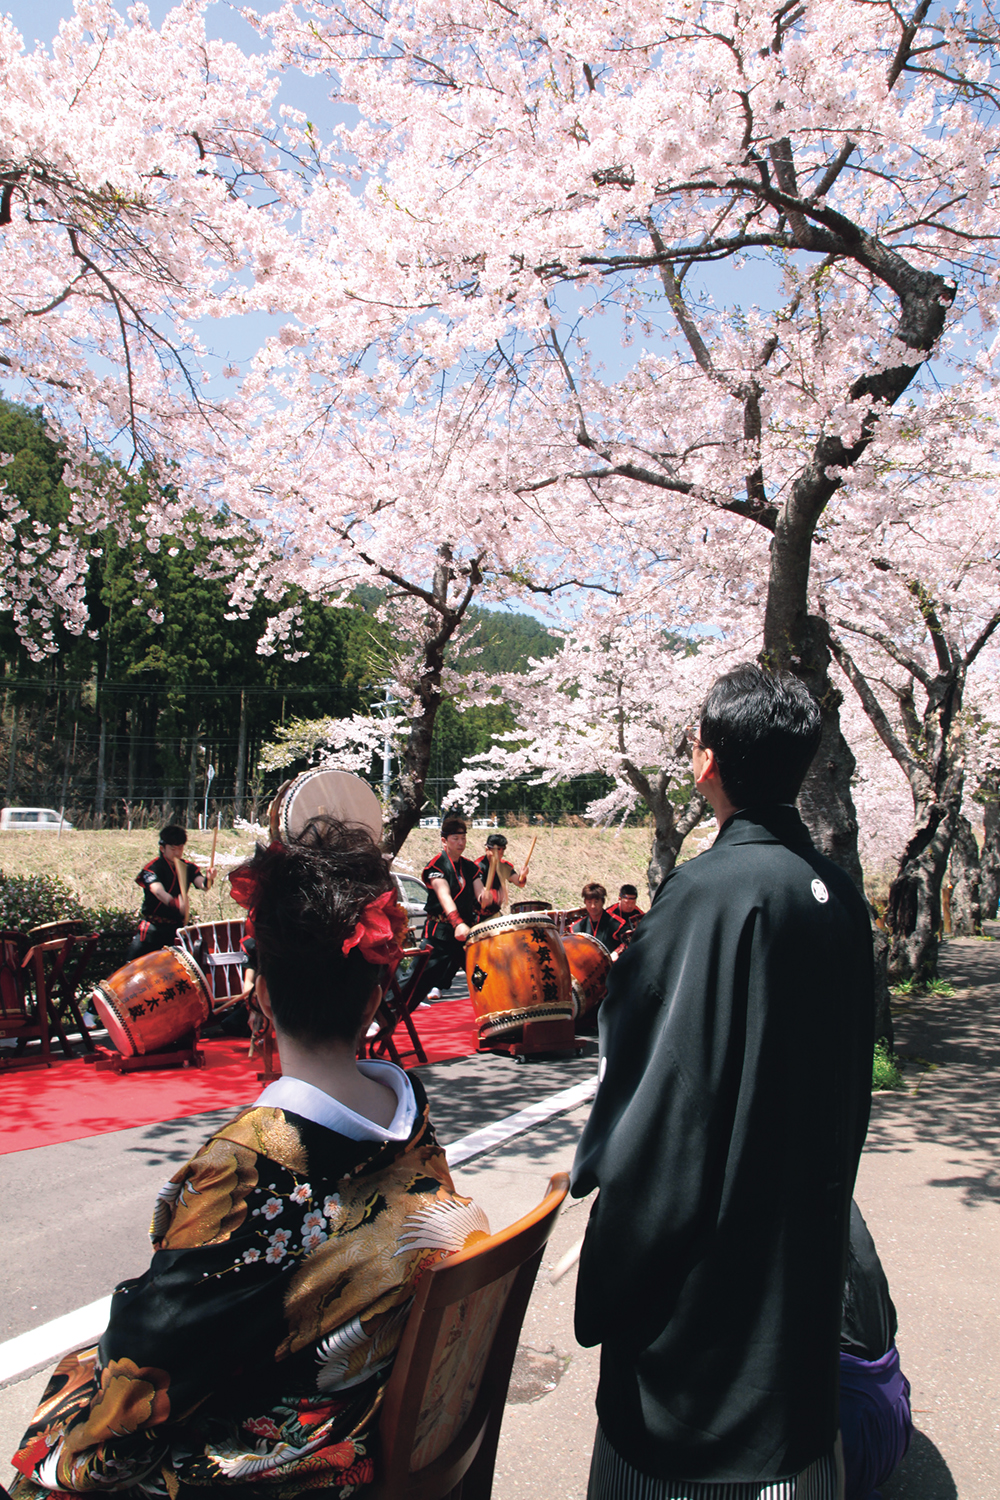 本郷の桜並木の下での結婚式の様子。みんなの笑顔も満開だ。